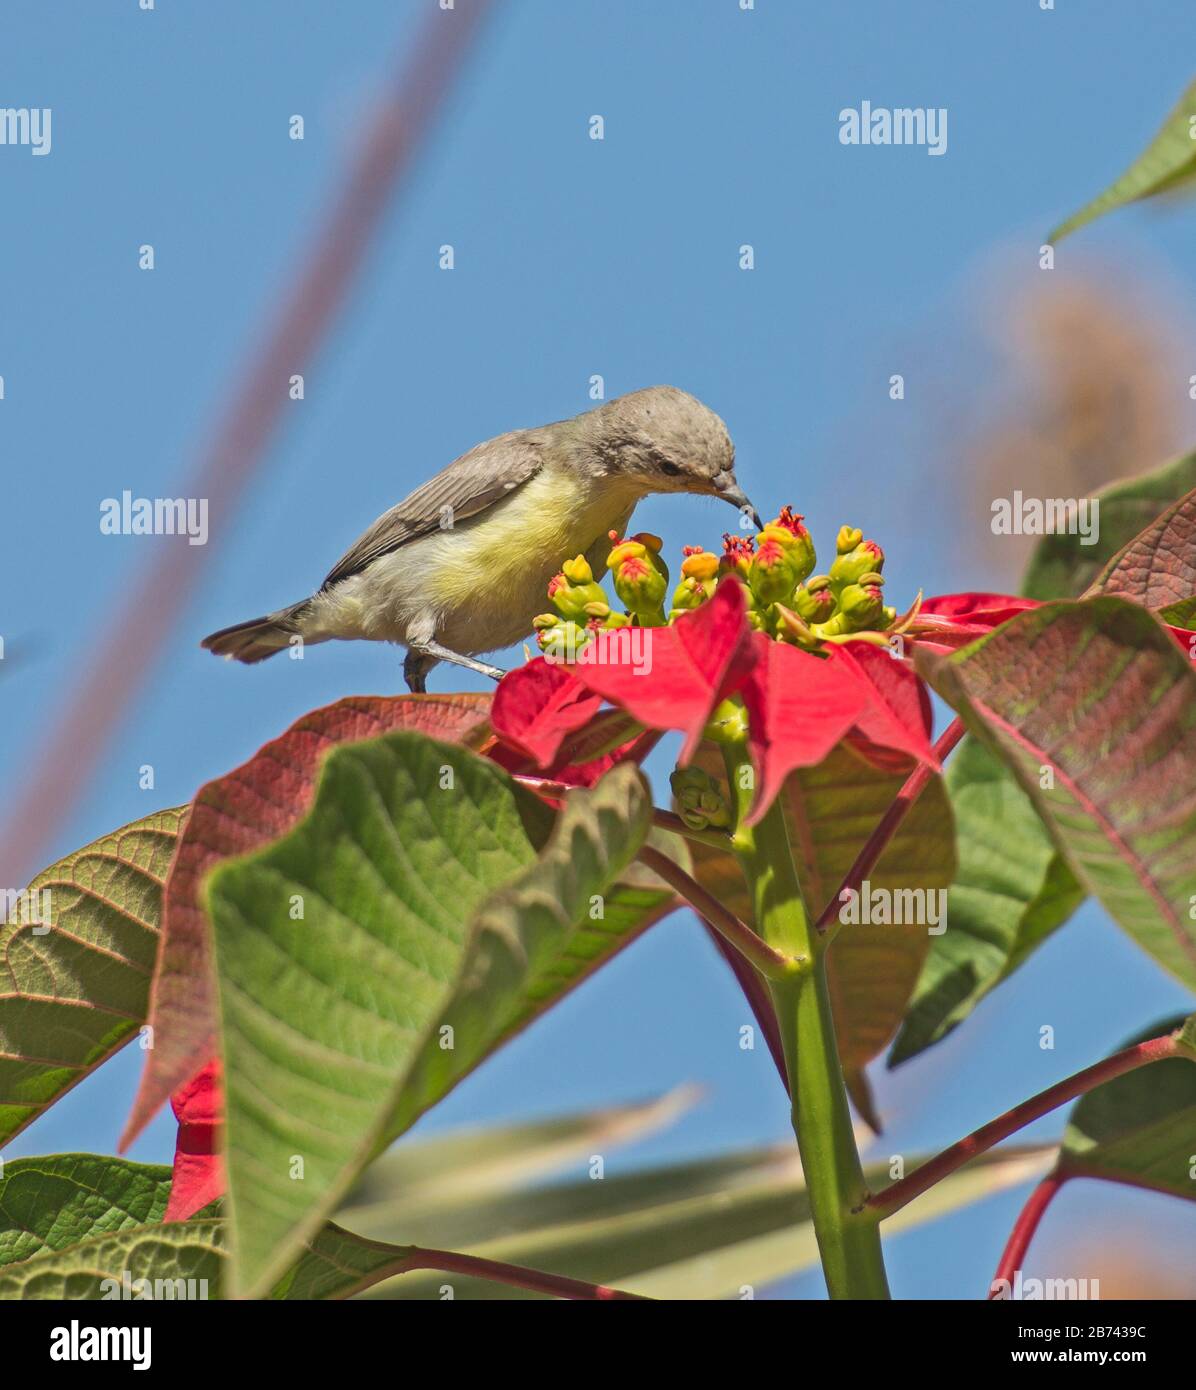 Detalle de primer plano de la planta de flores silvestres de color rojo poinsettia euphorbia pulcherrima con el ave solar del valle del nilo en el plumaje de invierno Foto de stock